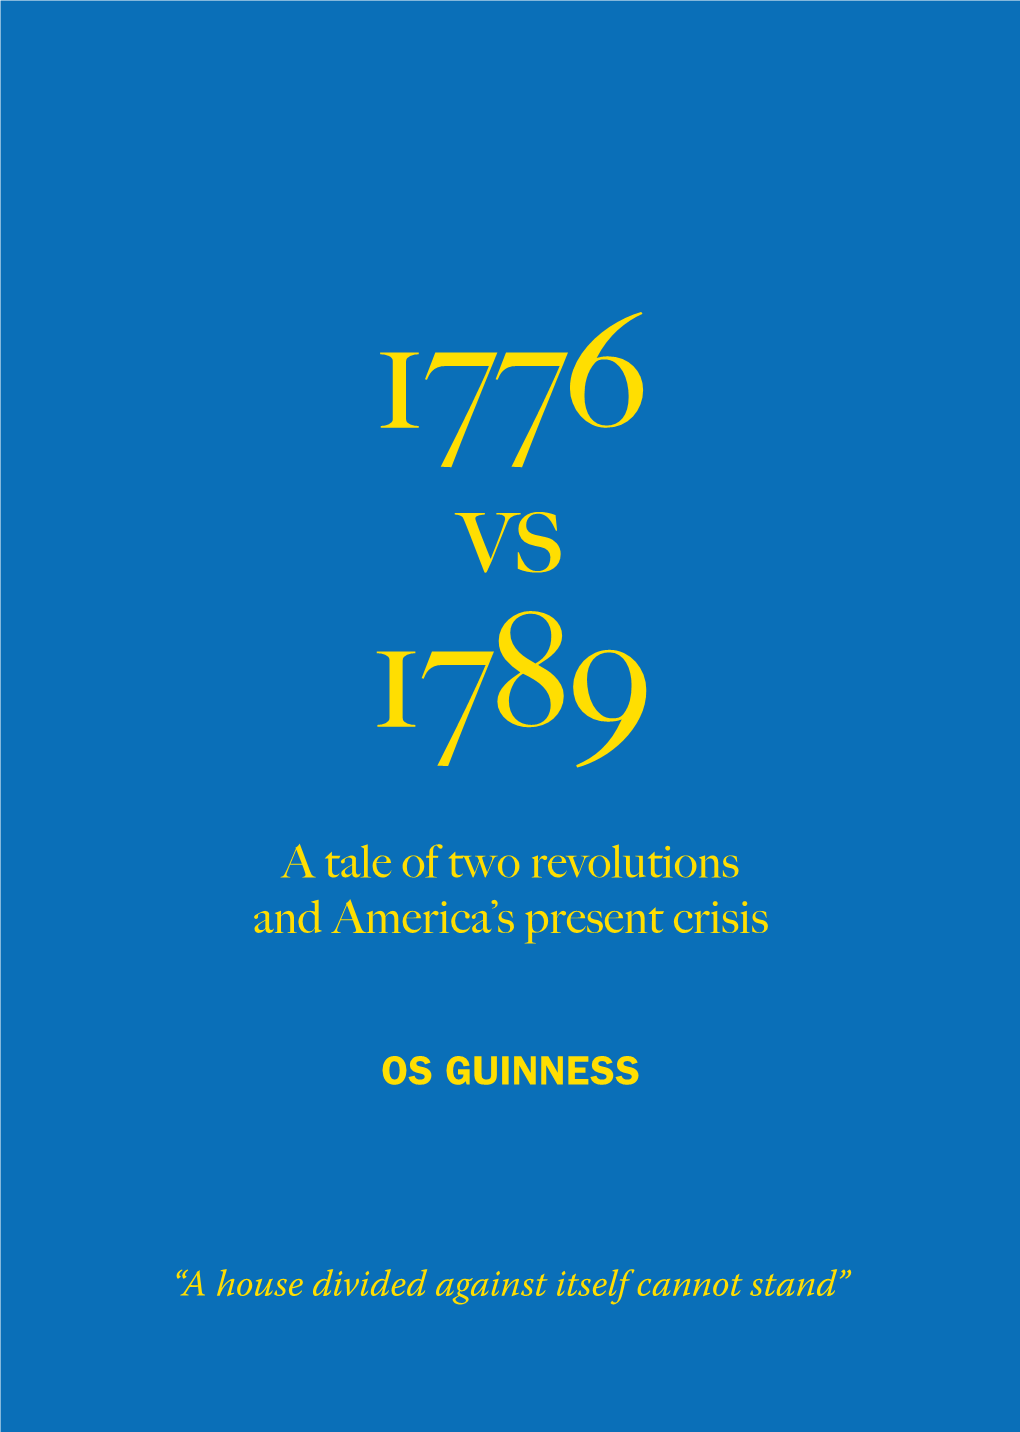 Os Guinness Essay: 1776 V. 1789